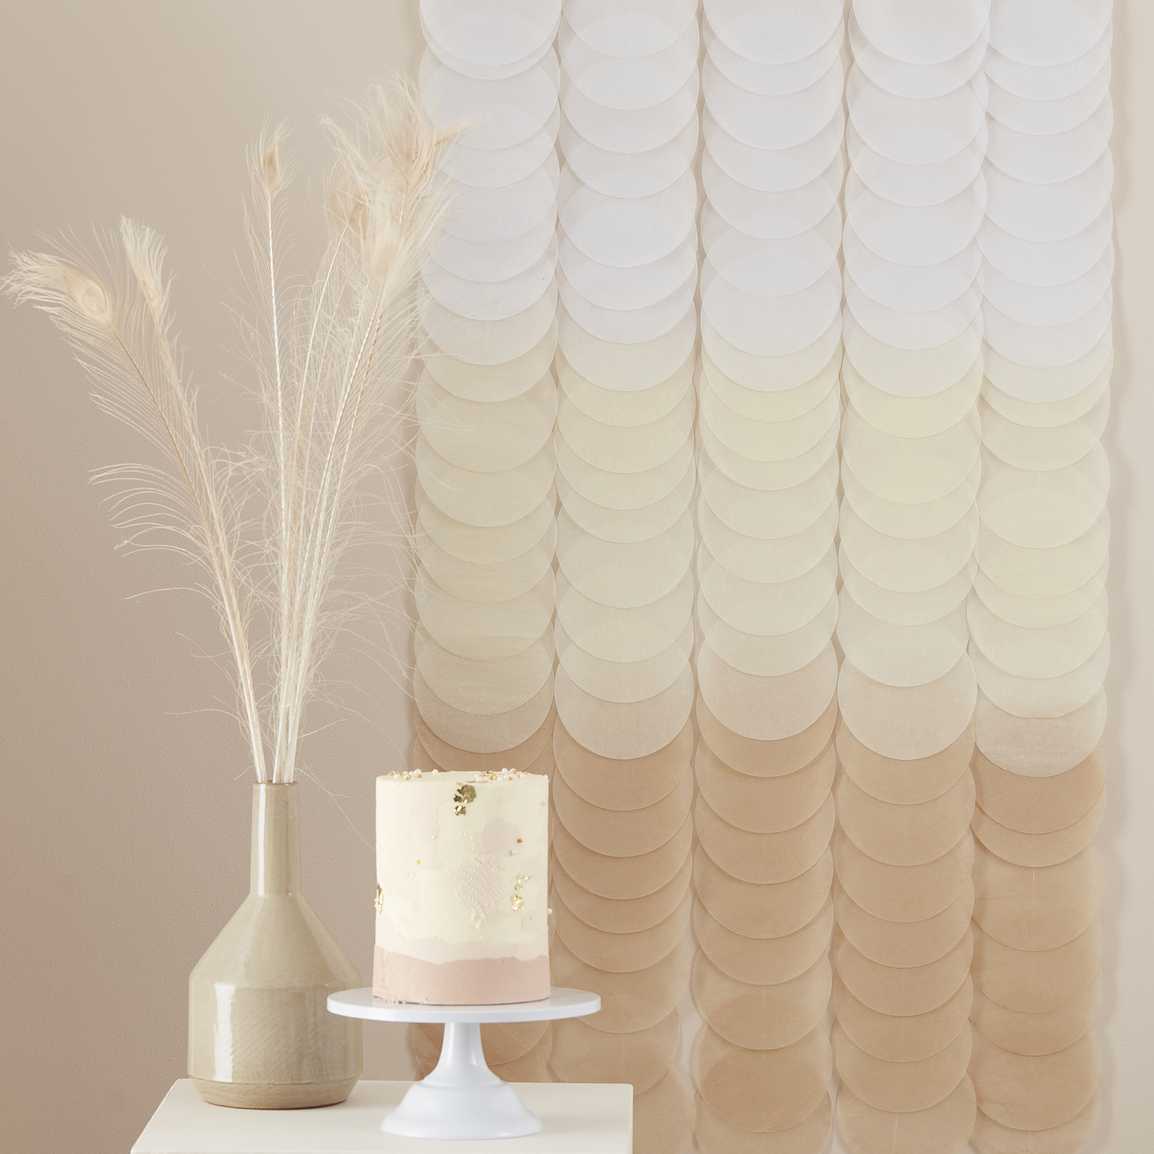 Paper curtain beige ombre 2m (H) x 2m (W)